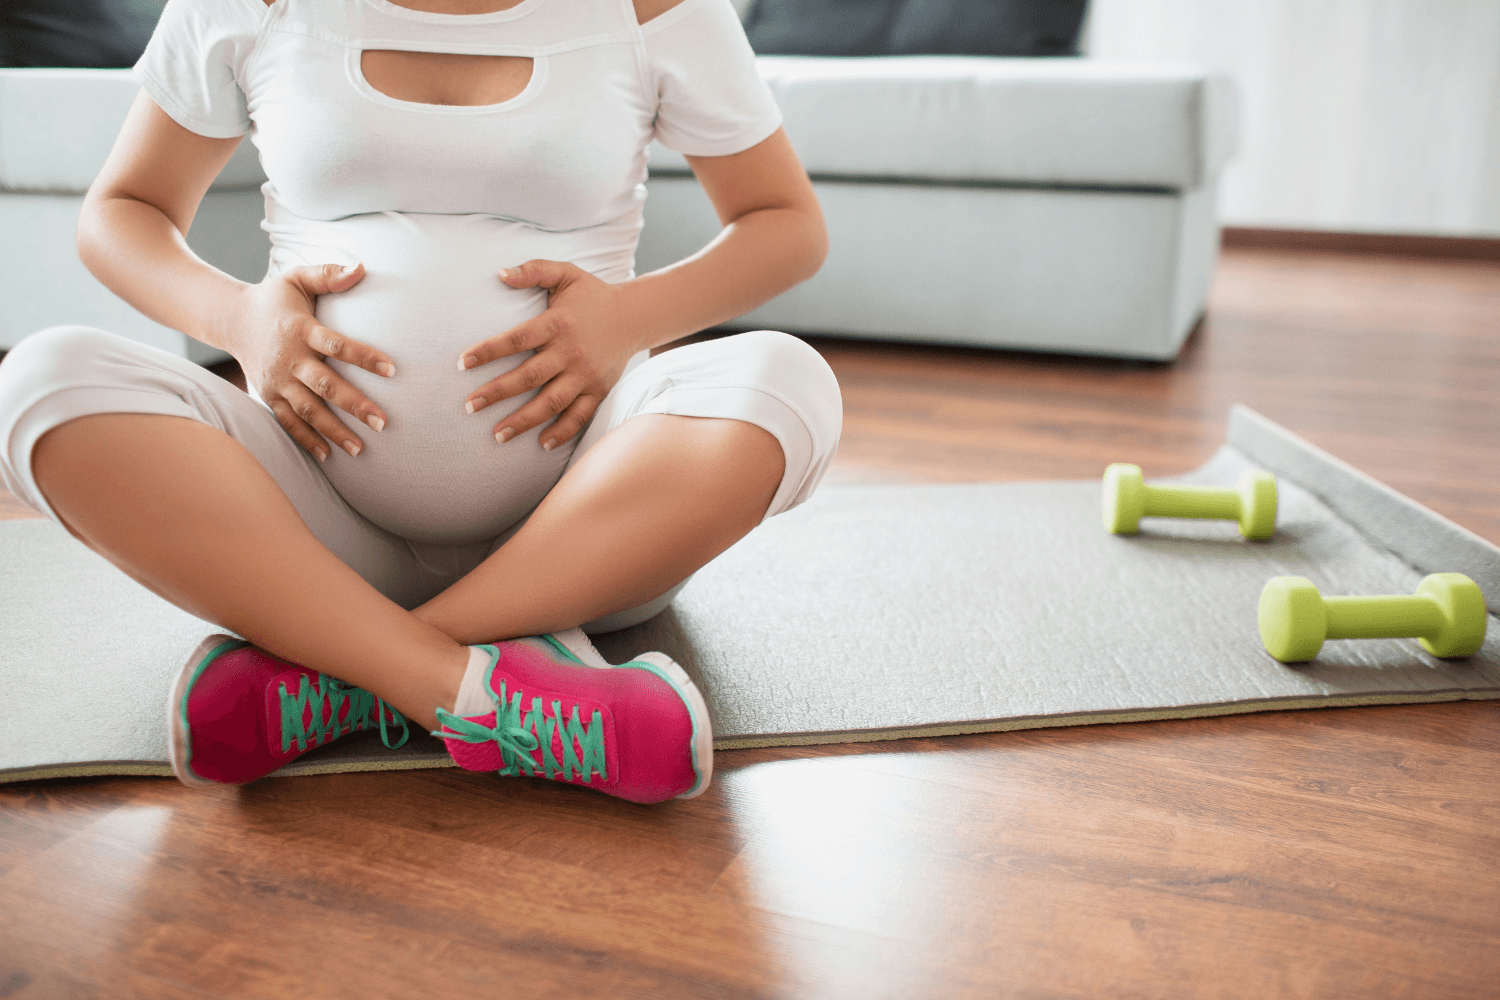 Centre de sport et santé aux Ulis - grossesse - sport enceinte - bébé - activité physique - jambes lourdes - mal de dos